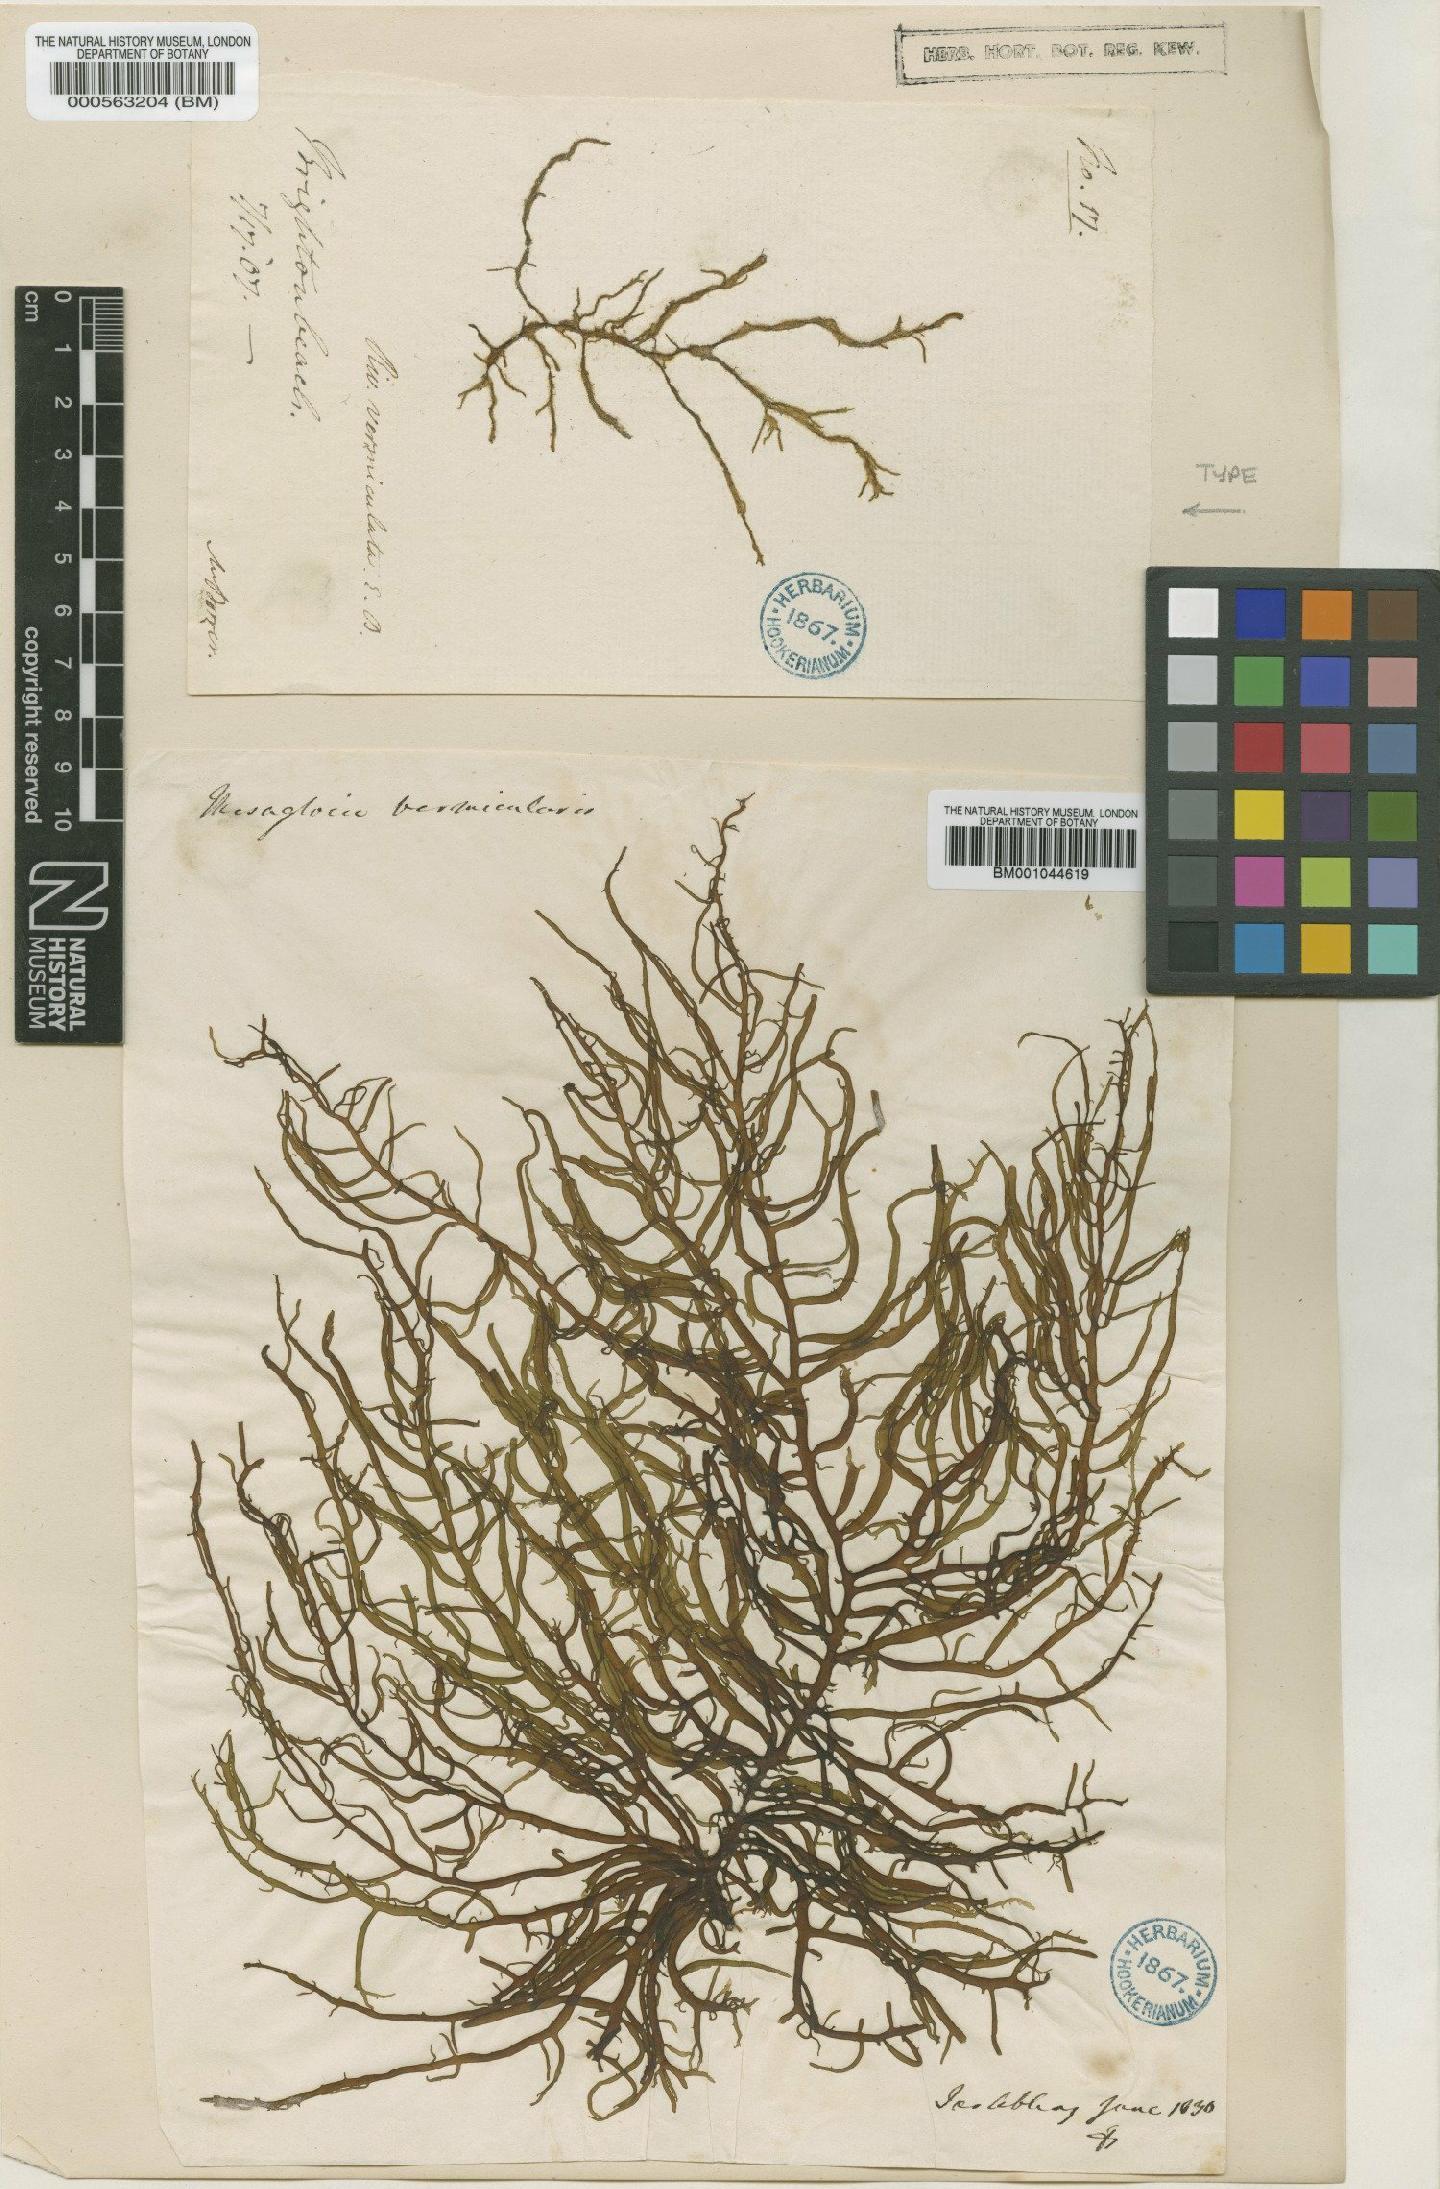 To NHMUK collection (Mesogloia vermiculata (Smith) Gray; NHMUK:ecatalogue:631971)